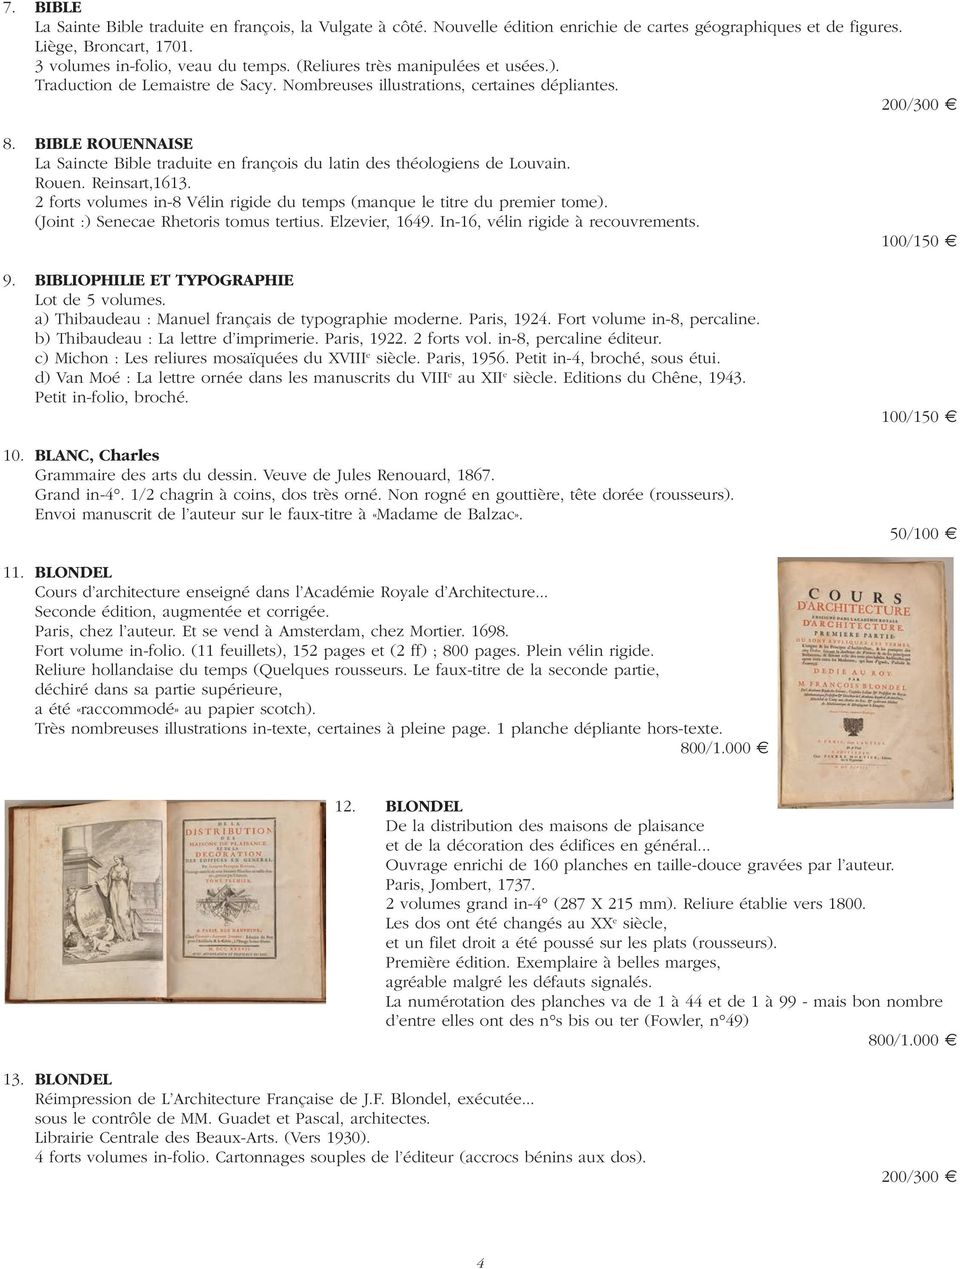 BIBLE ROUENNAISE La Saincte Bible traduite en françois du latin des théologiens de Louvain. Rouen. Reinsart,1613. 2 forts volumes in-8 Vélin rigide du temps (manque le titre du premier tome).